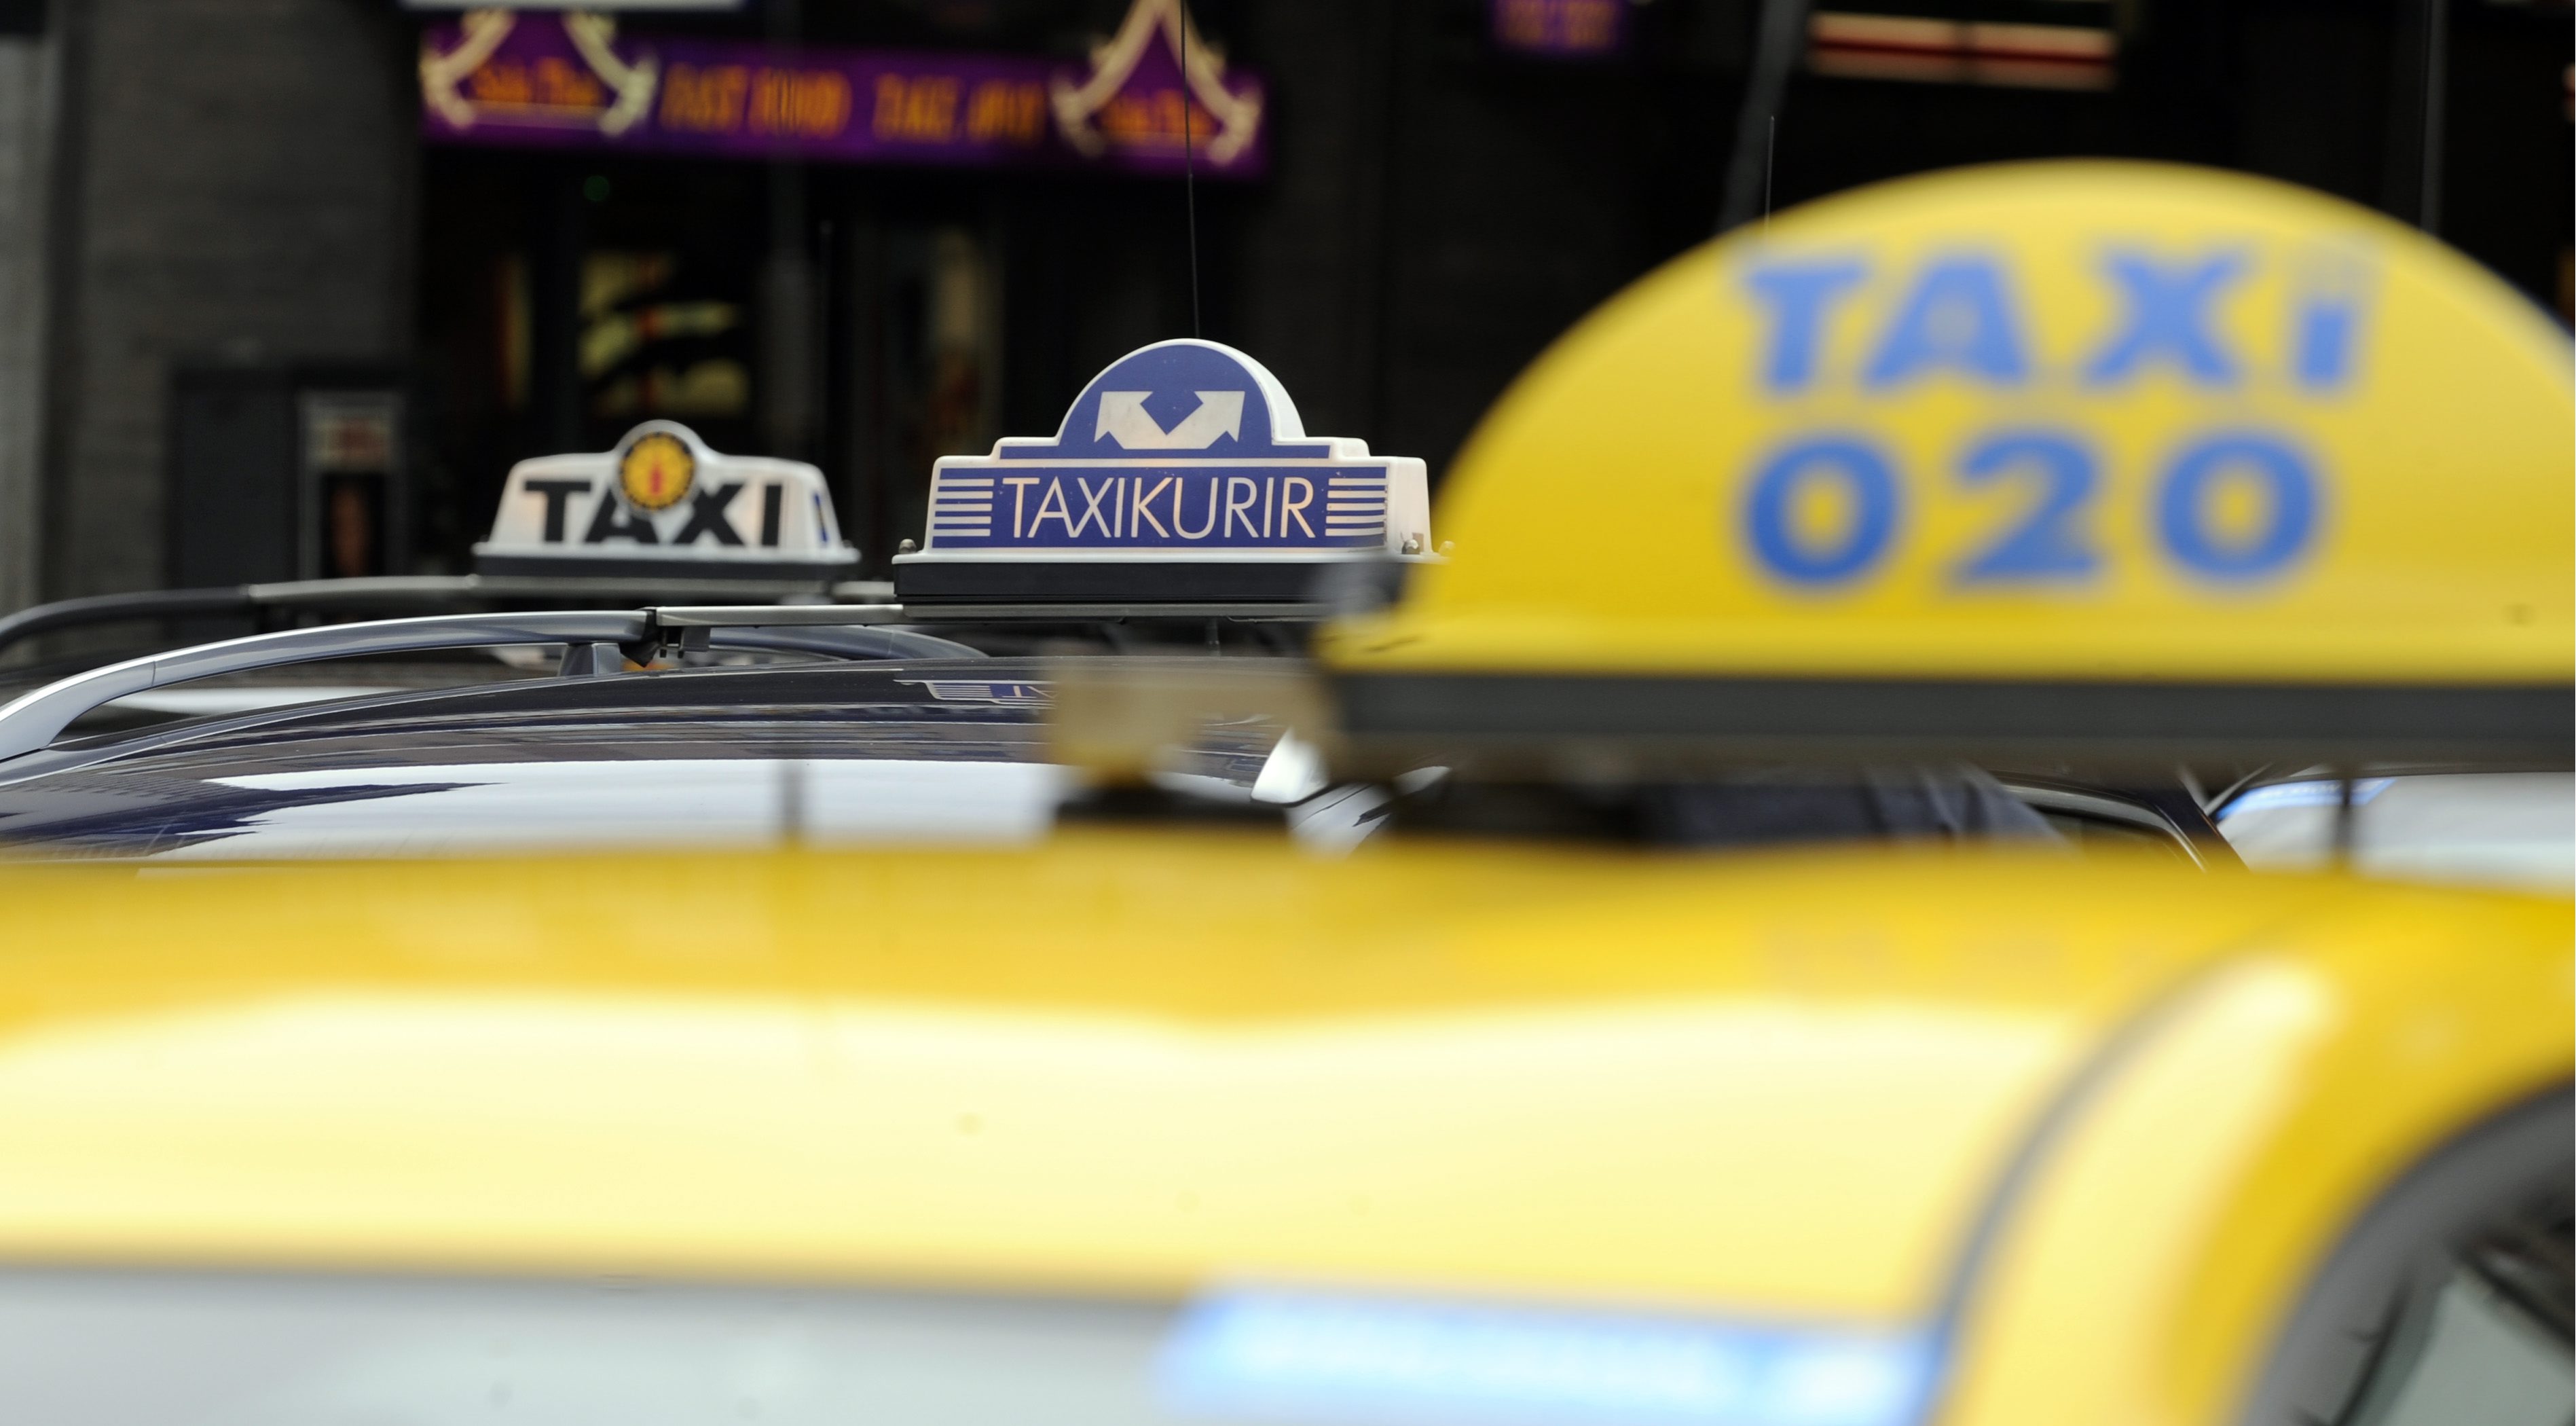 Taxi 020 har hand om körningarna.